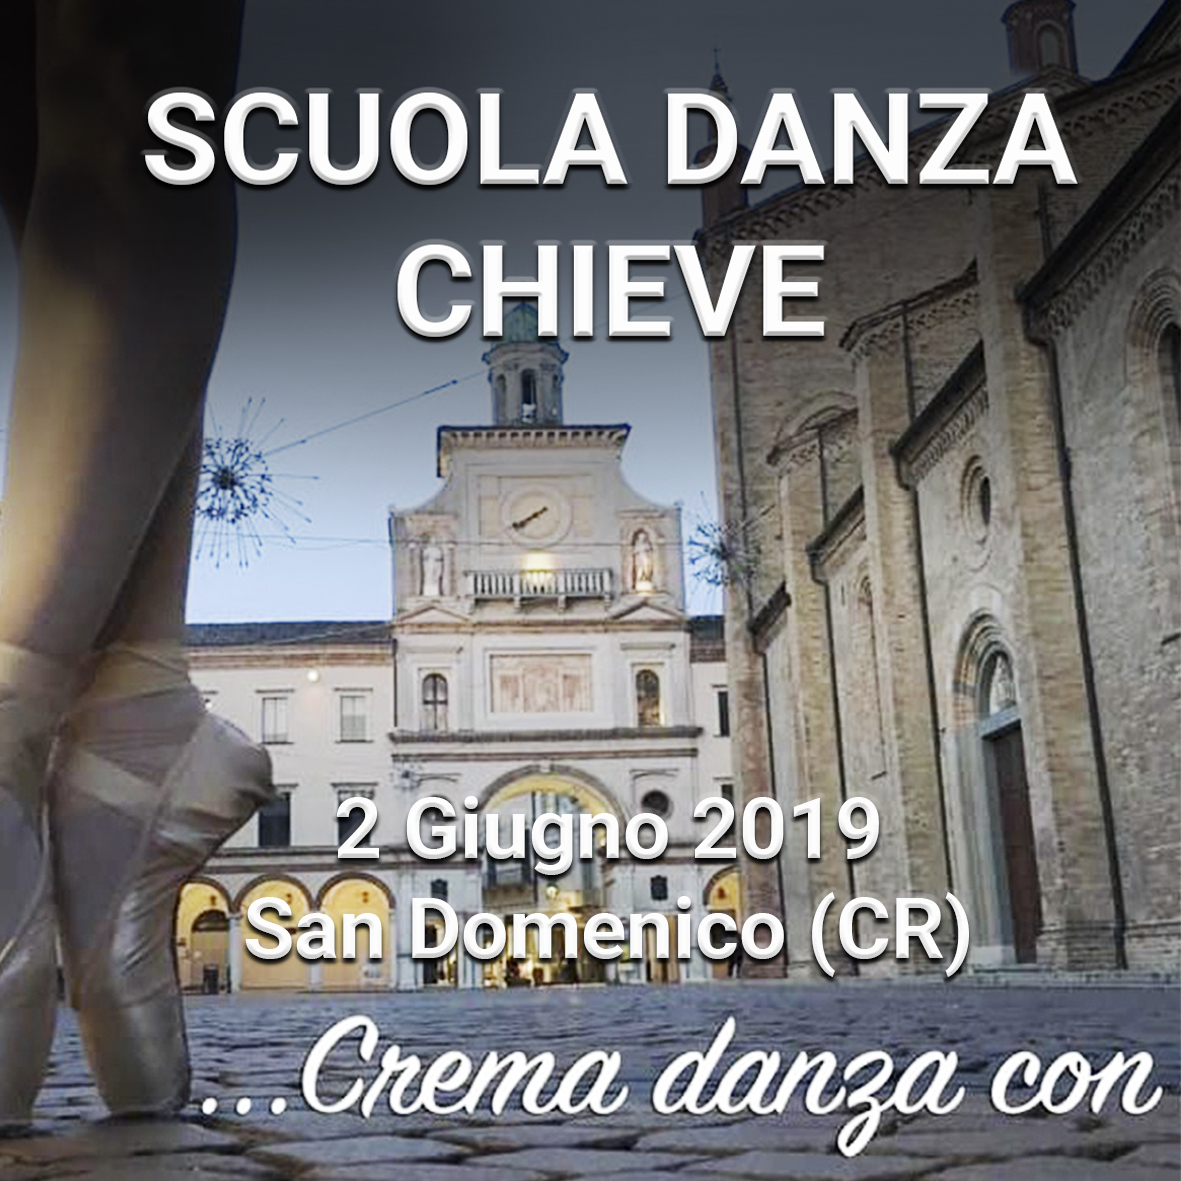 Scuola Danza Chieve  2019 San Domenico